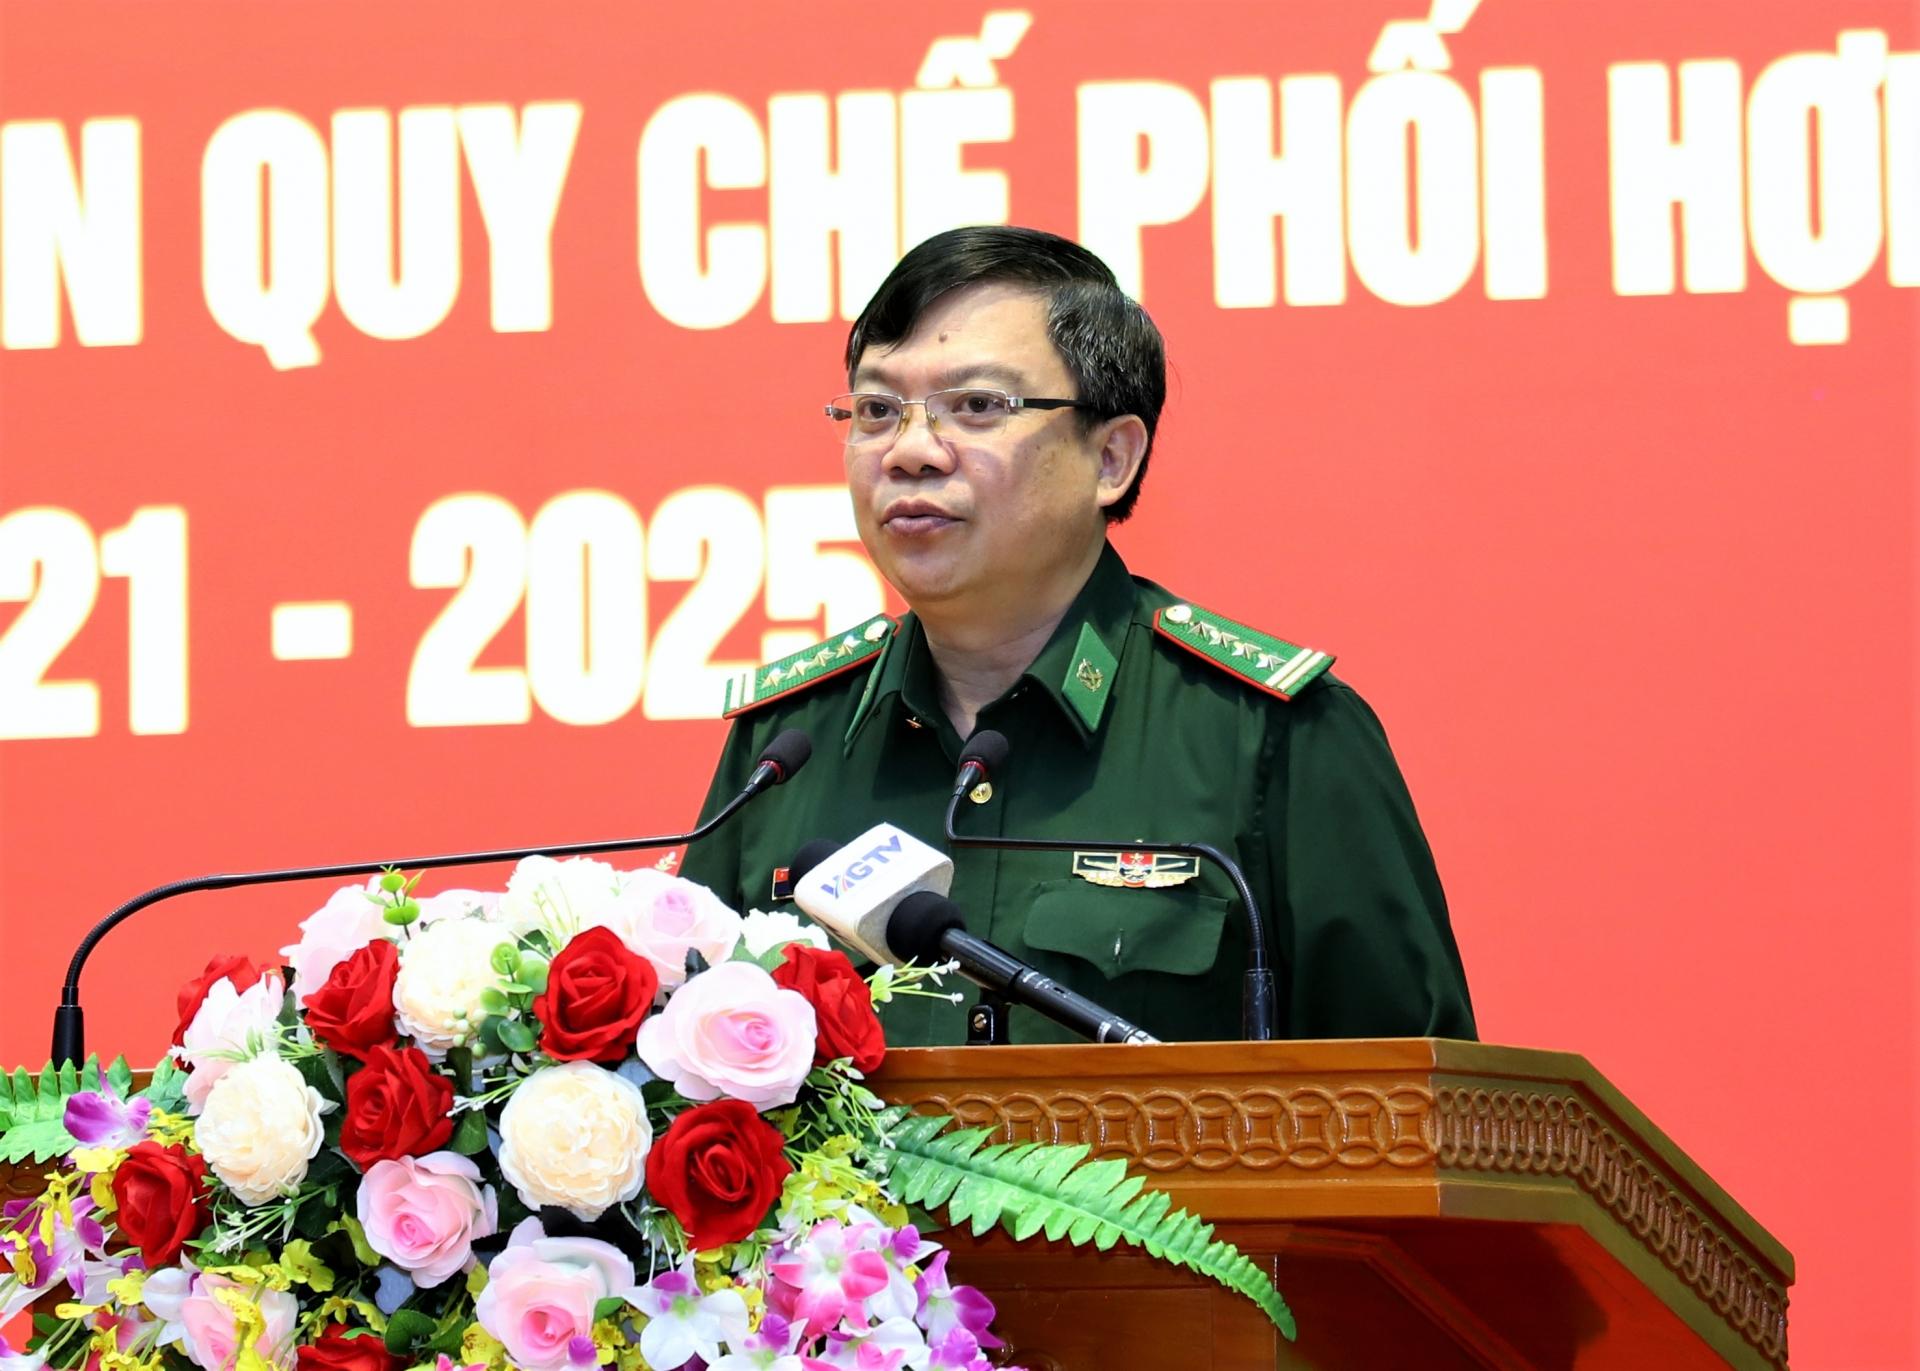 Đại tá Đào Hồng Hà, Chính ủy Bộ Chỉ huy BĐBP tỉnh báo cáo, thông tin một số kết quả nổi bật trong công tác phối hợp.